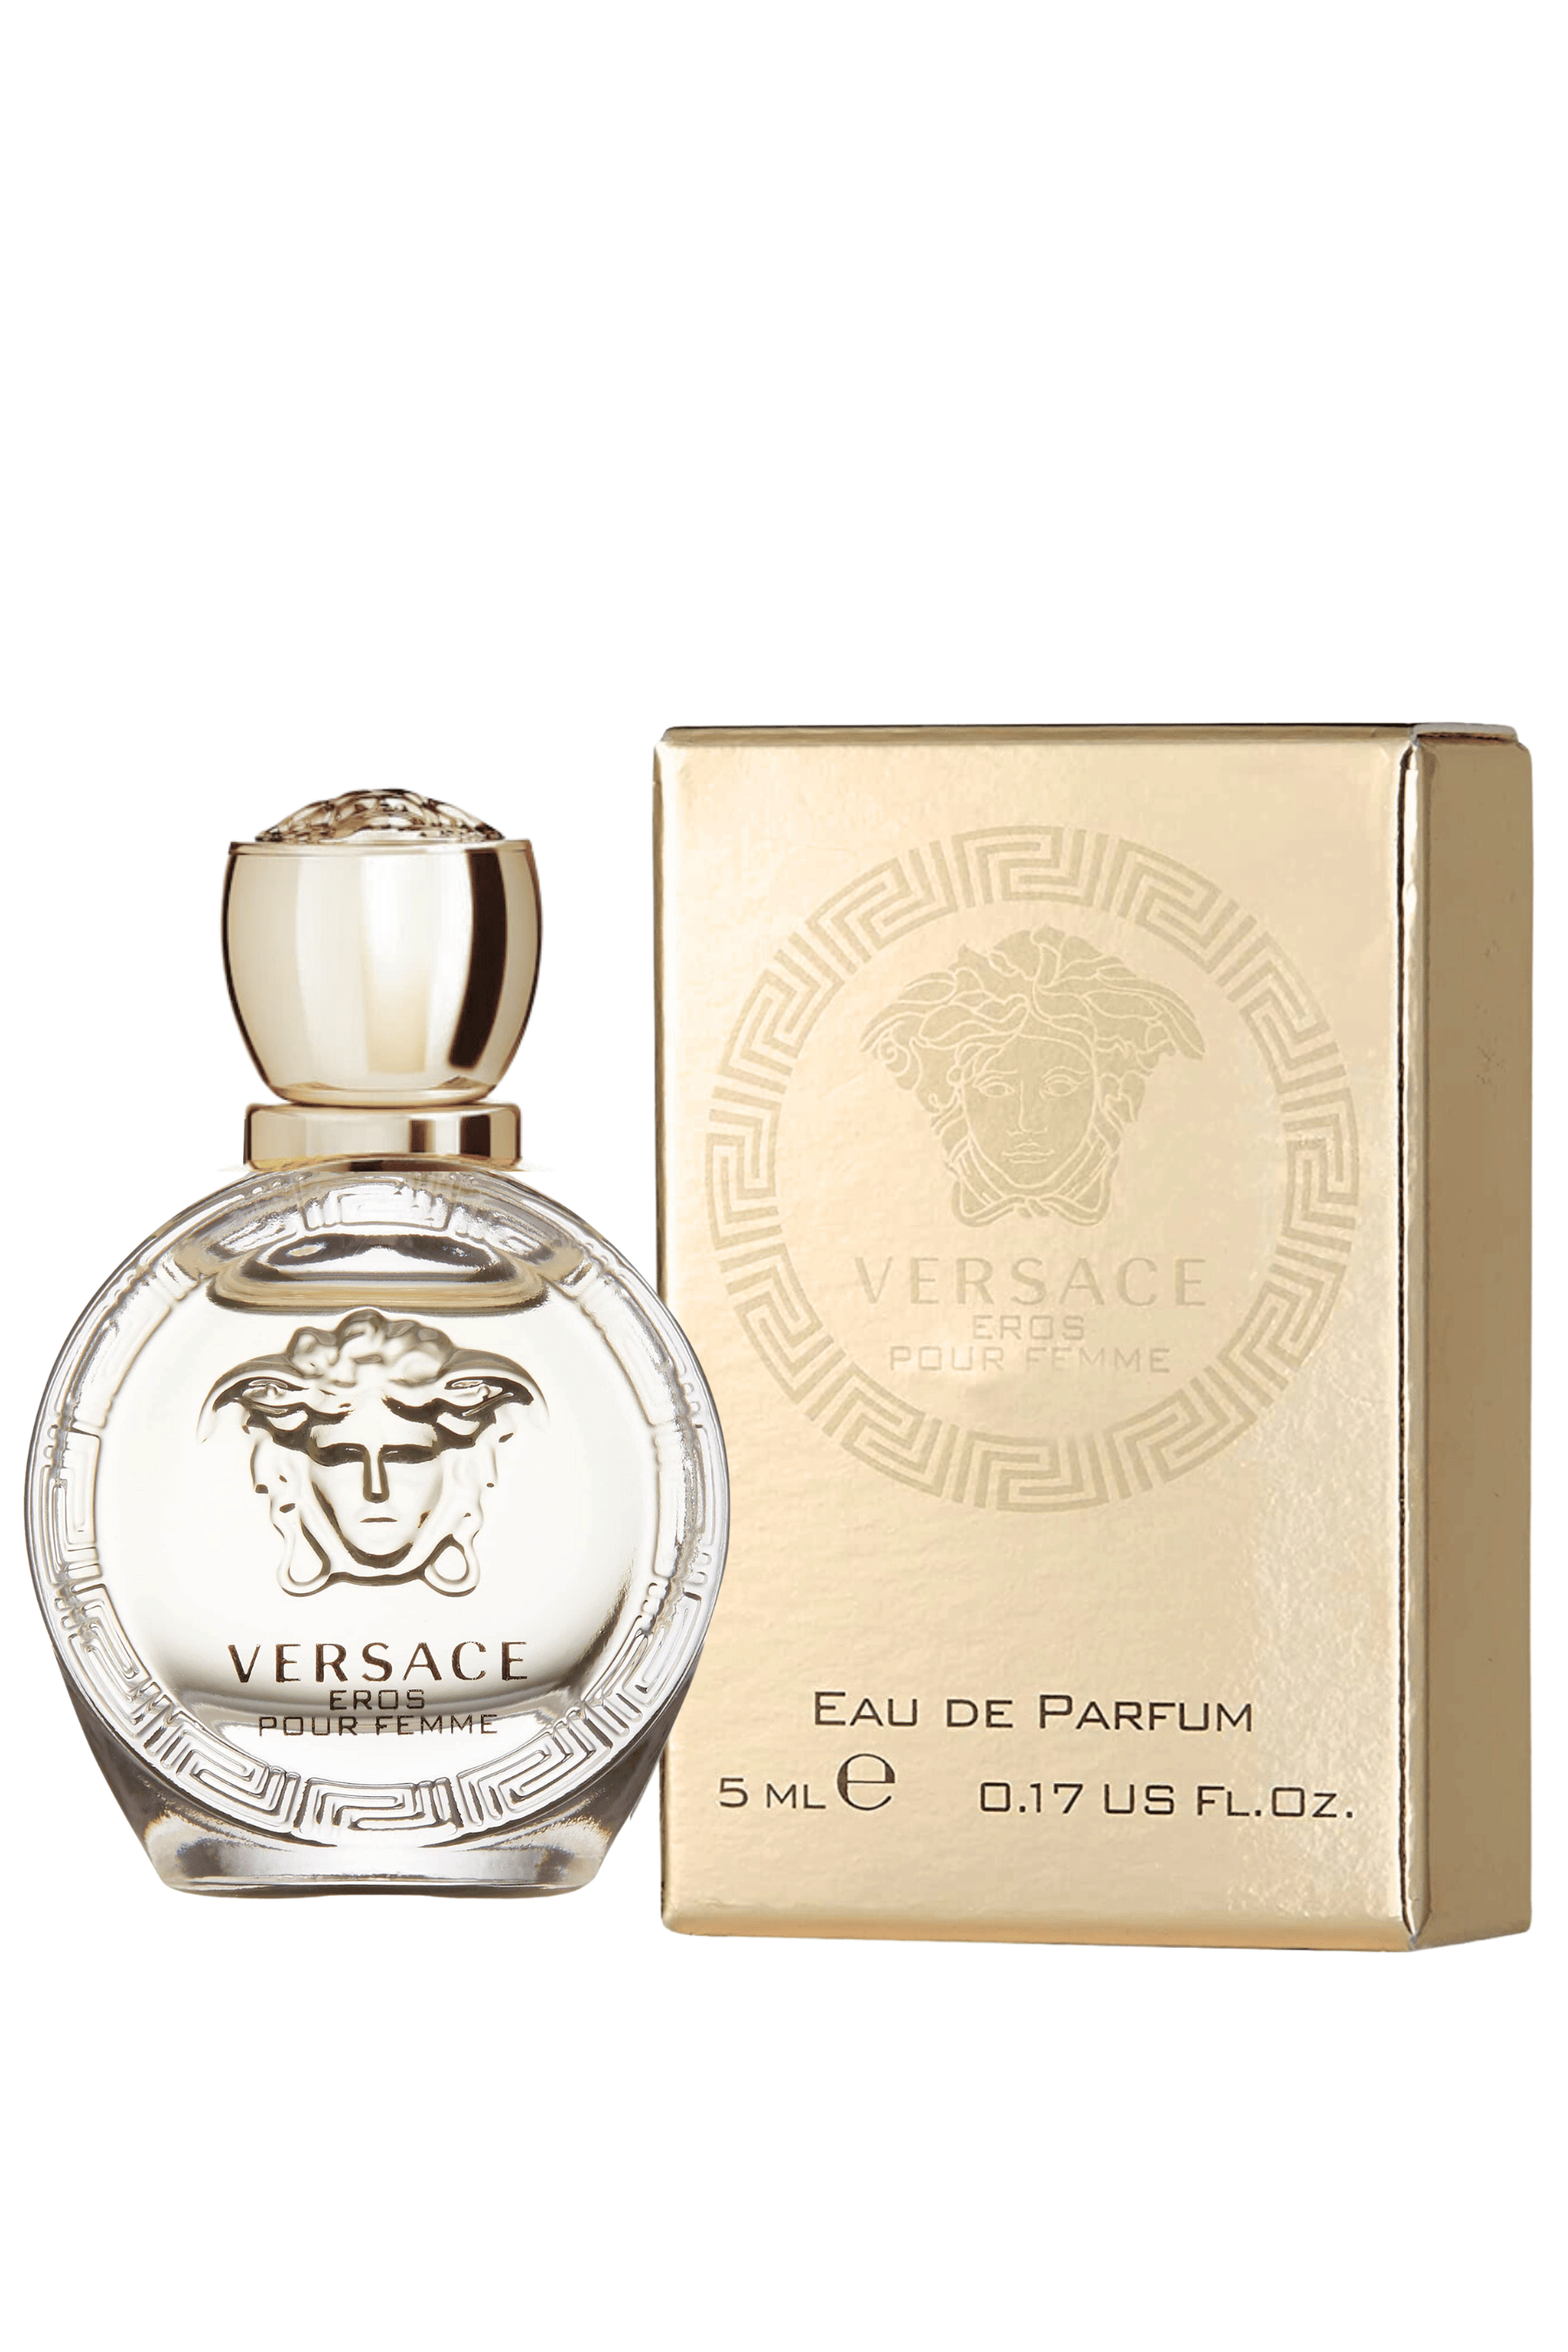 Eros Pour Femme Perfume | Versace | REBL Scents